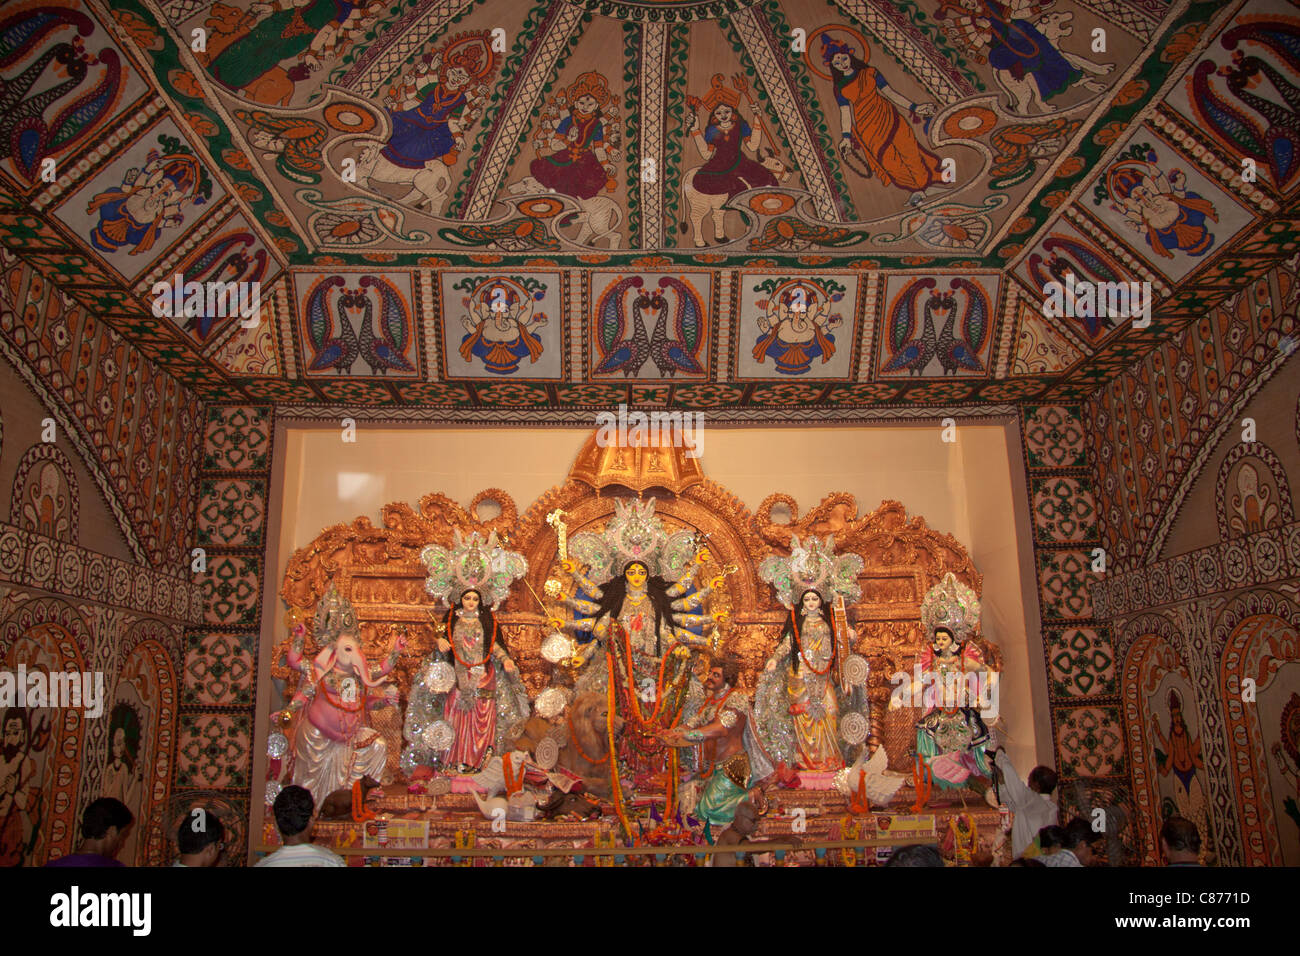 Komplizierte Jute Spitze Wandmalereien im "Kobiraj Bagan Durga Puja im' in 'Ultadanga', Kolkata (Kalkutta), West Bengal, Indien. Stockfoto